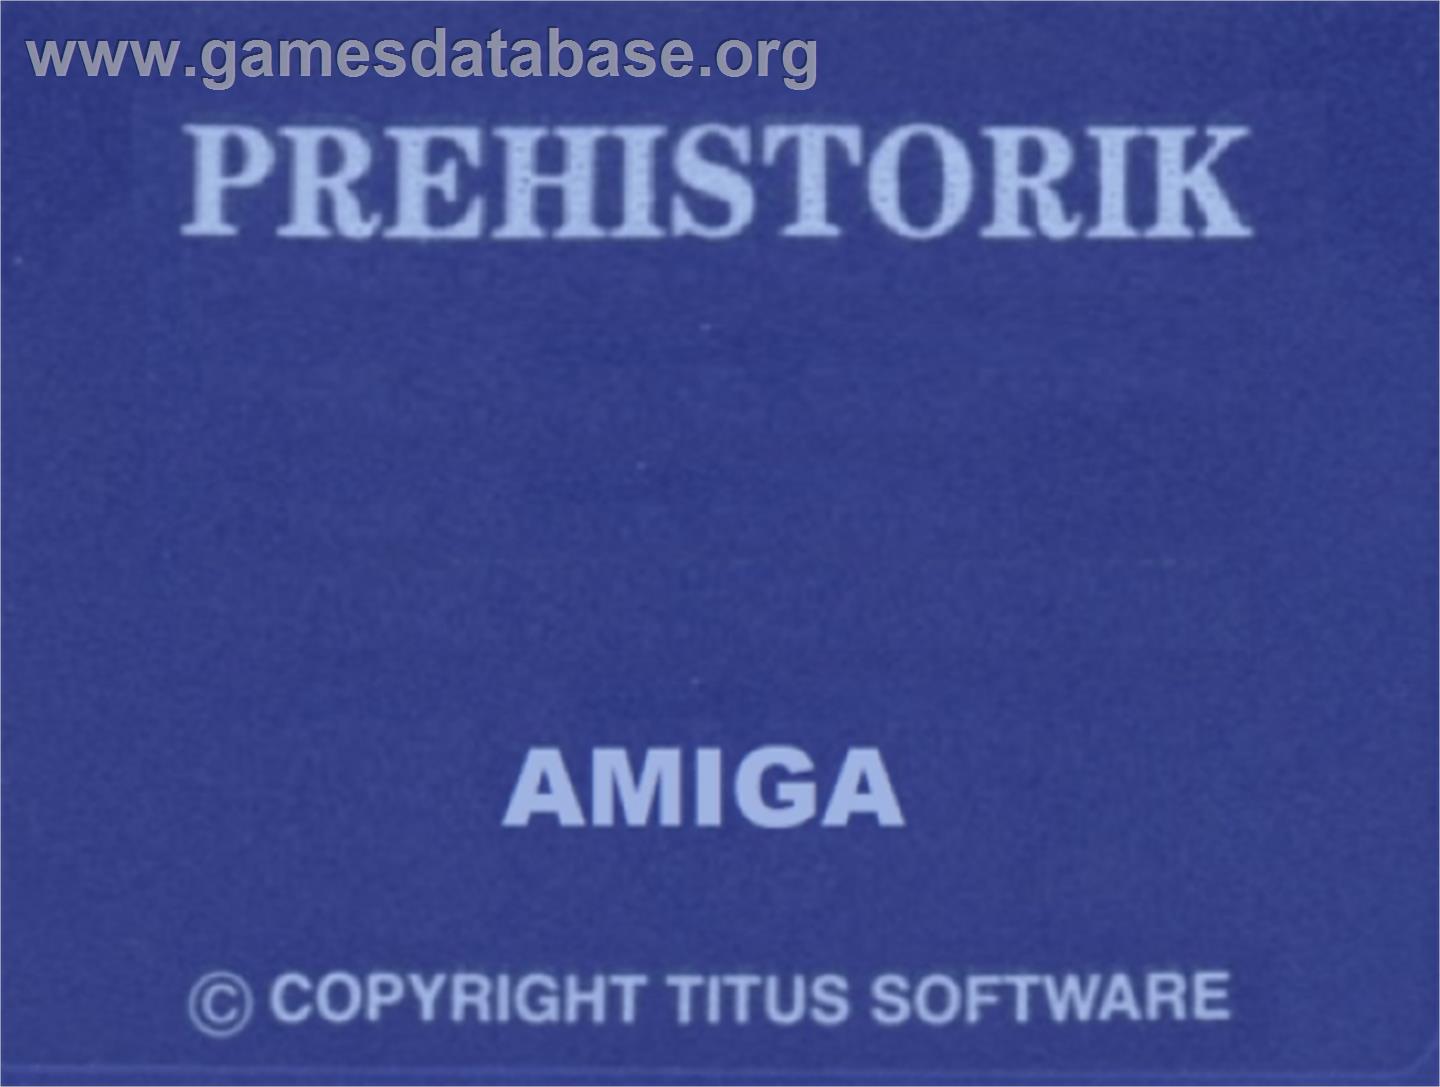 Prehistorik - Commodore Amiga - Artwork - Cartridge Top